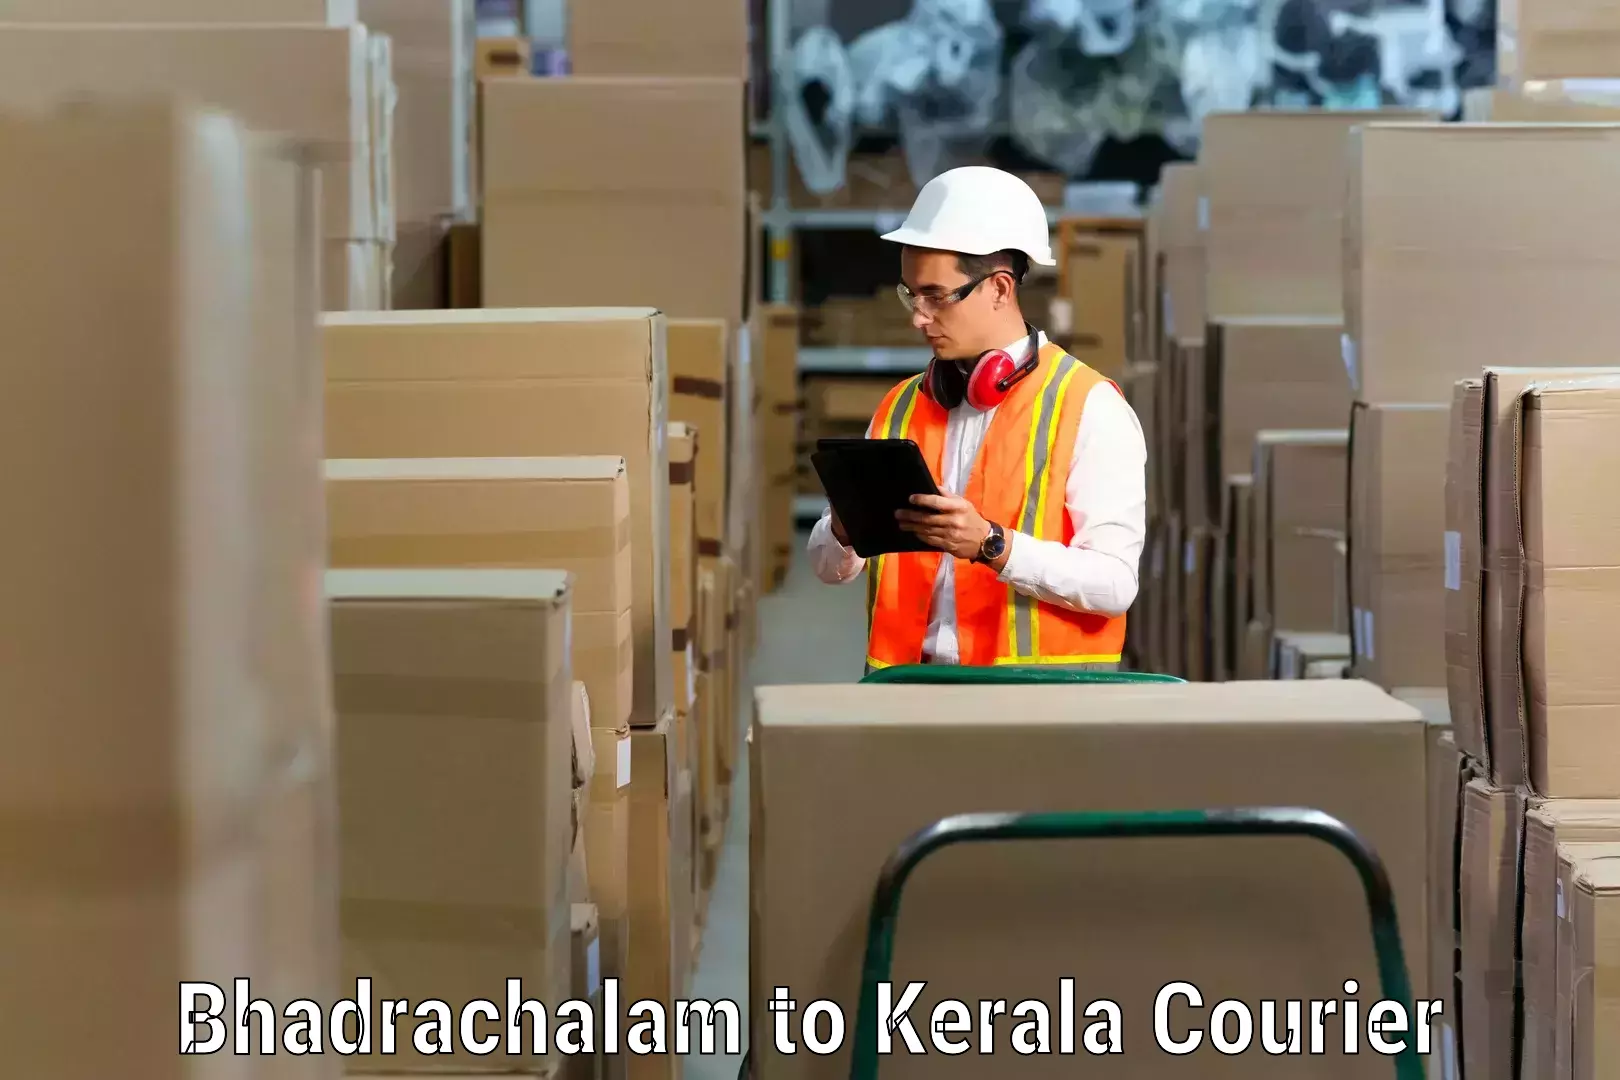 Furniture transport and storage Bhadrachalam to Koothattukulam